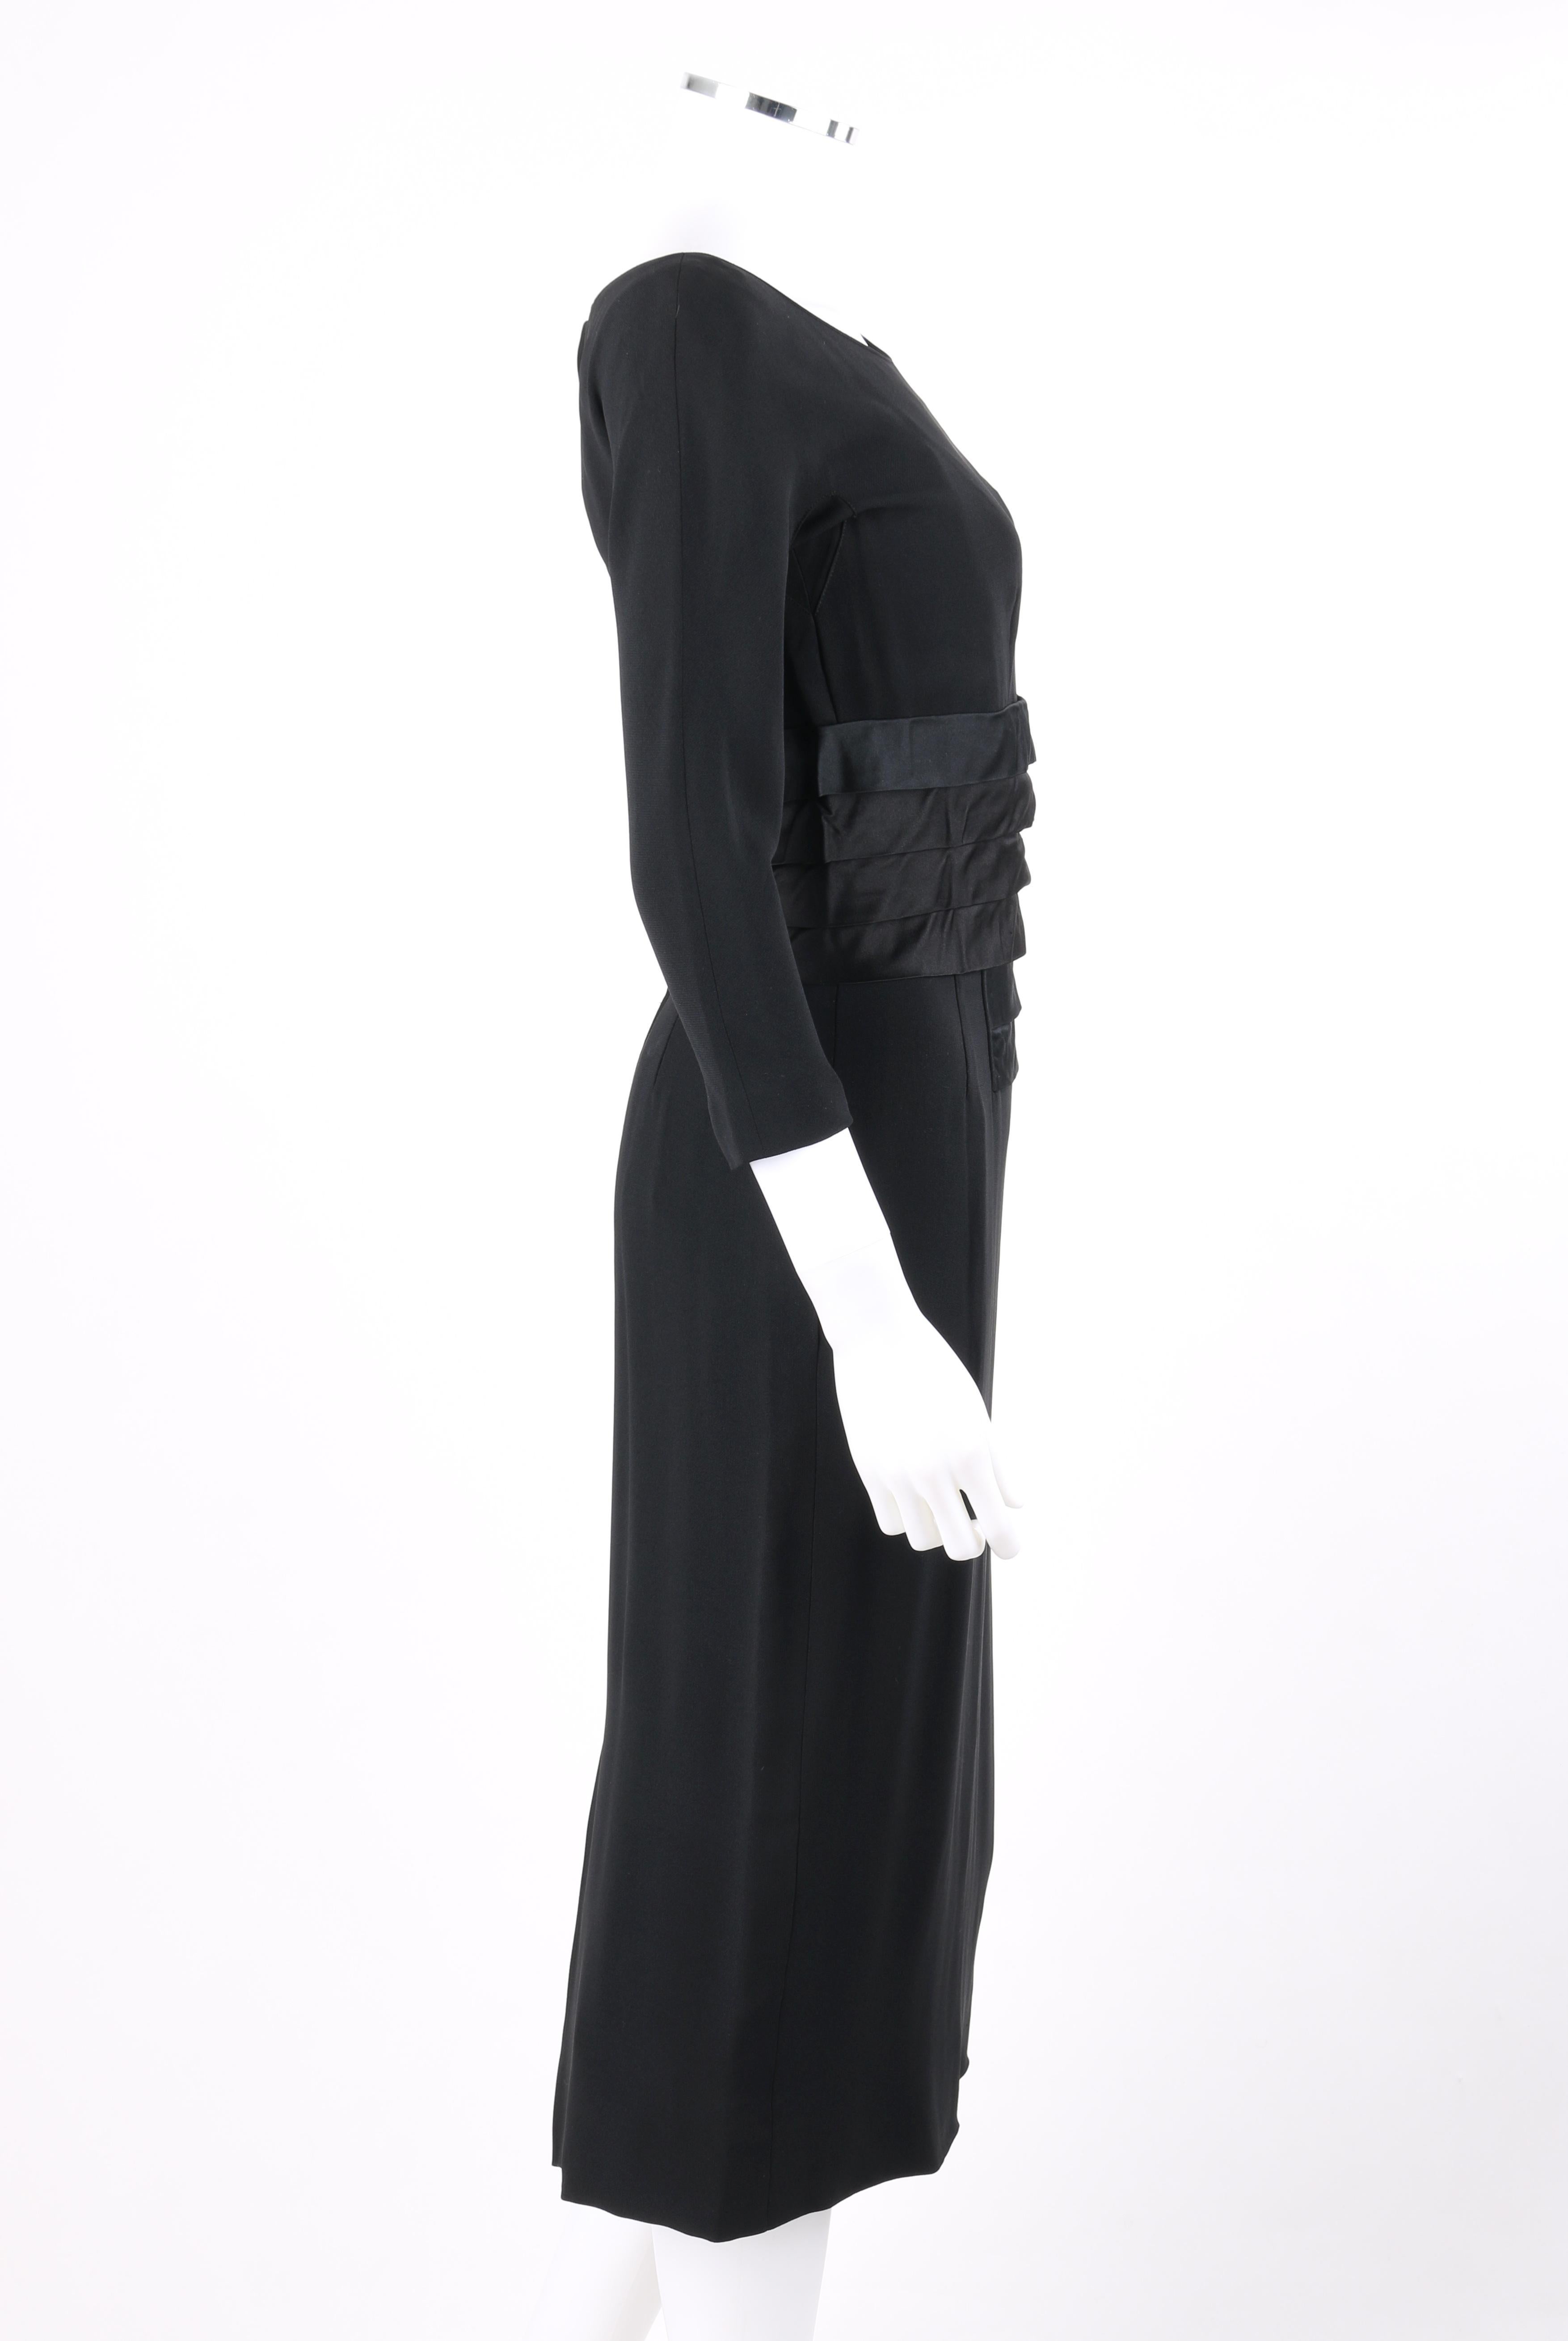 NAT KAPLAN c.1960s Black Silk Satin Tiered Pleat Waist Boat Neck Sheath Dress In Good Condition In Thiensville, WI